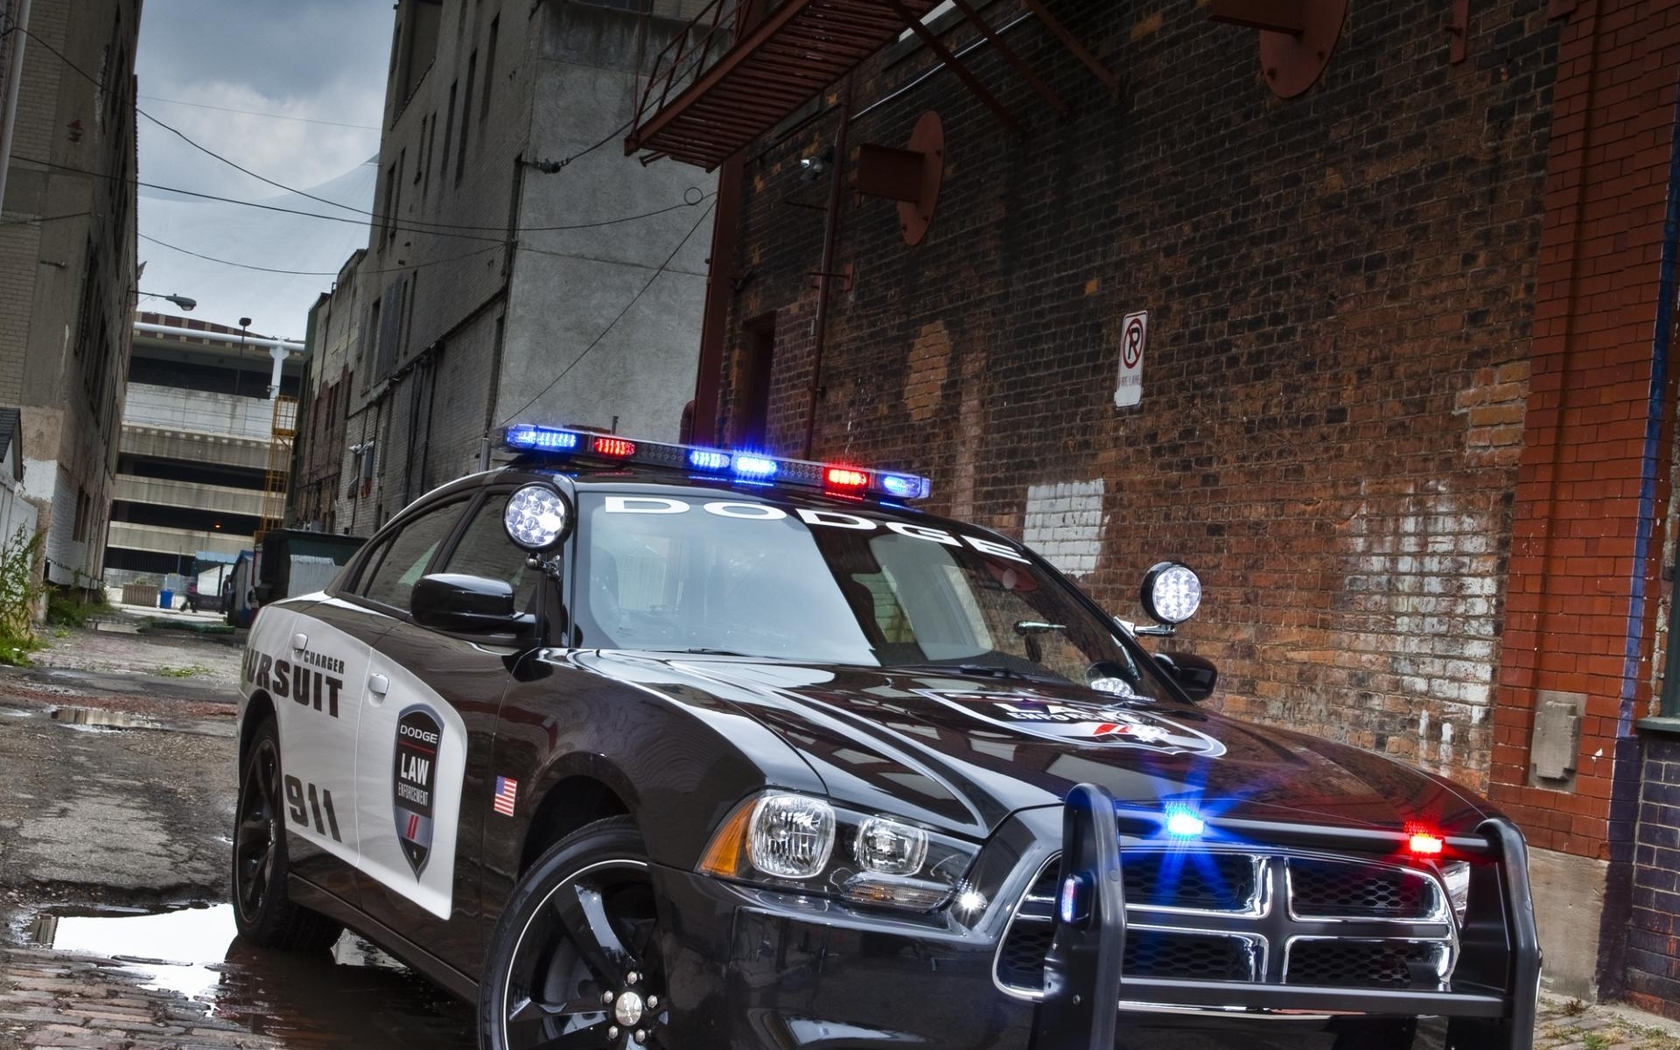 Картинка: Полицейская машина, переулок, здания, dodge, charger, pursuit